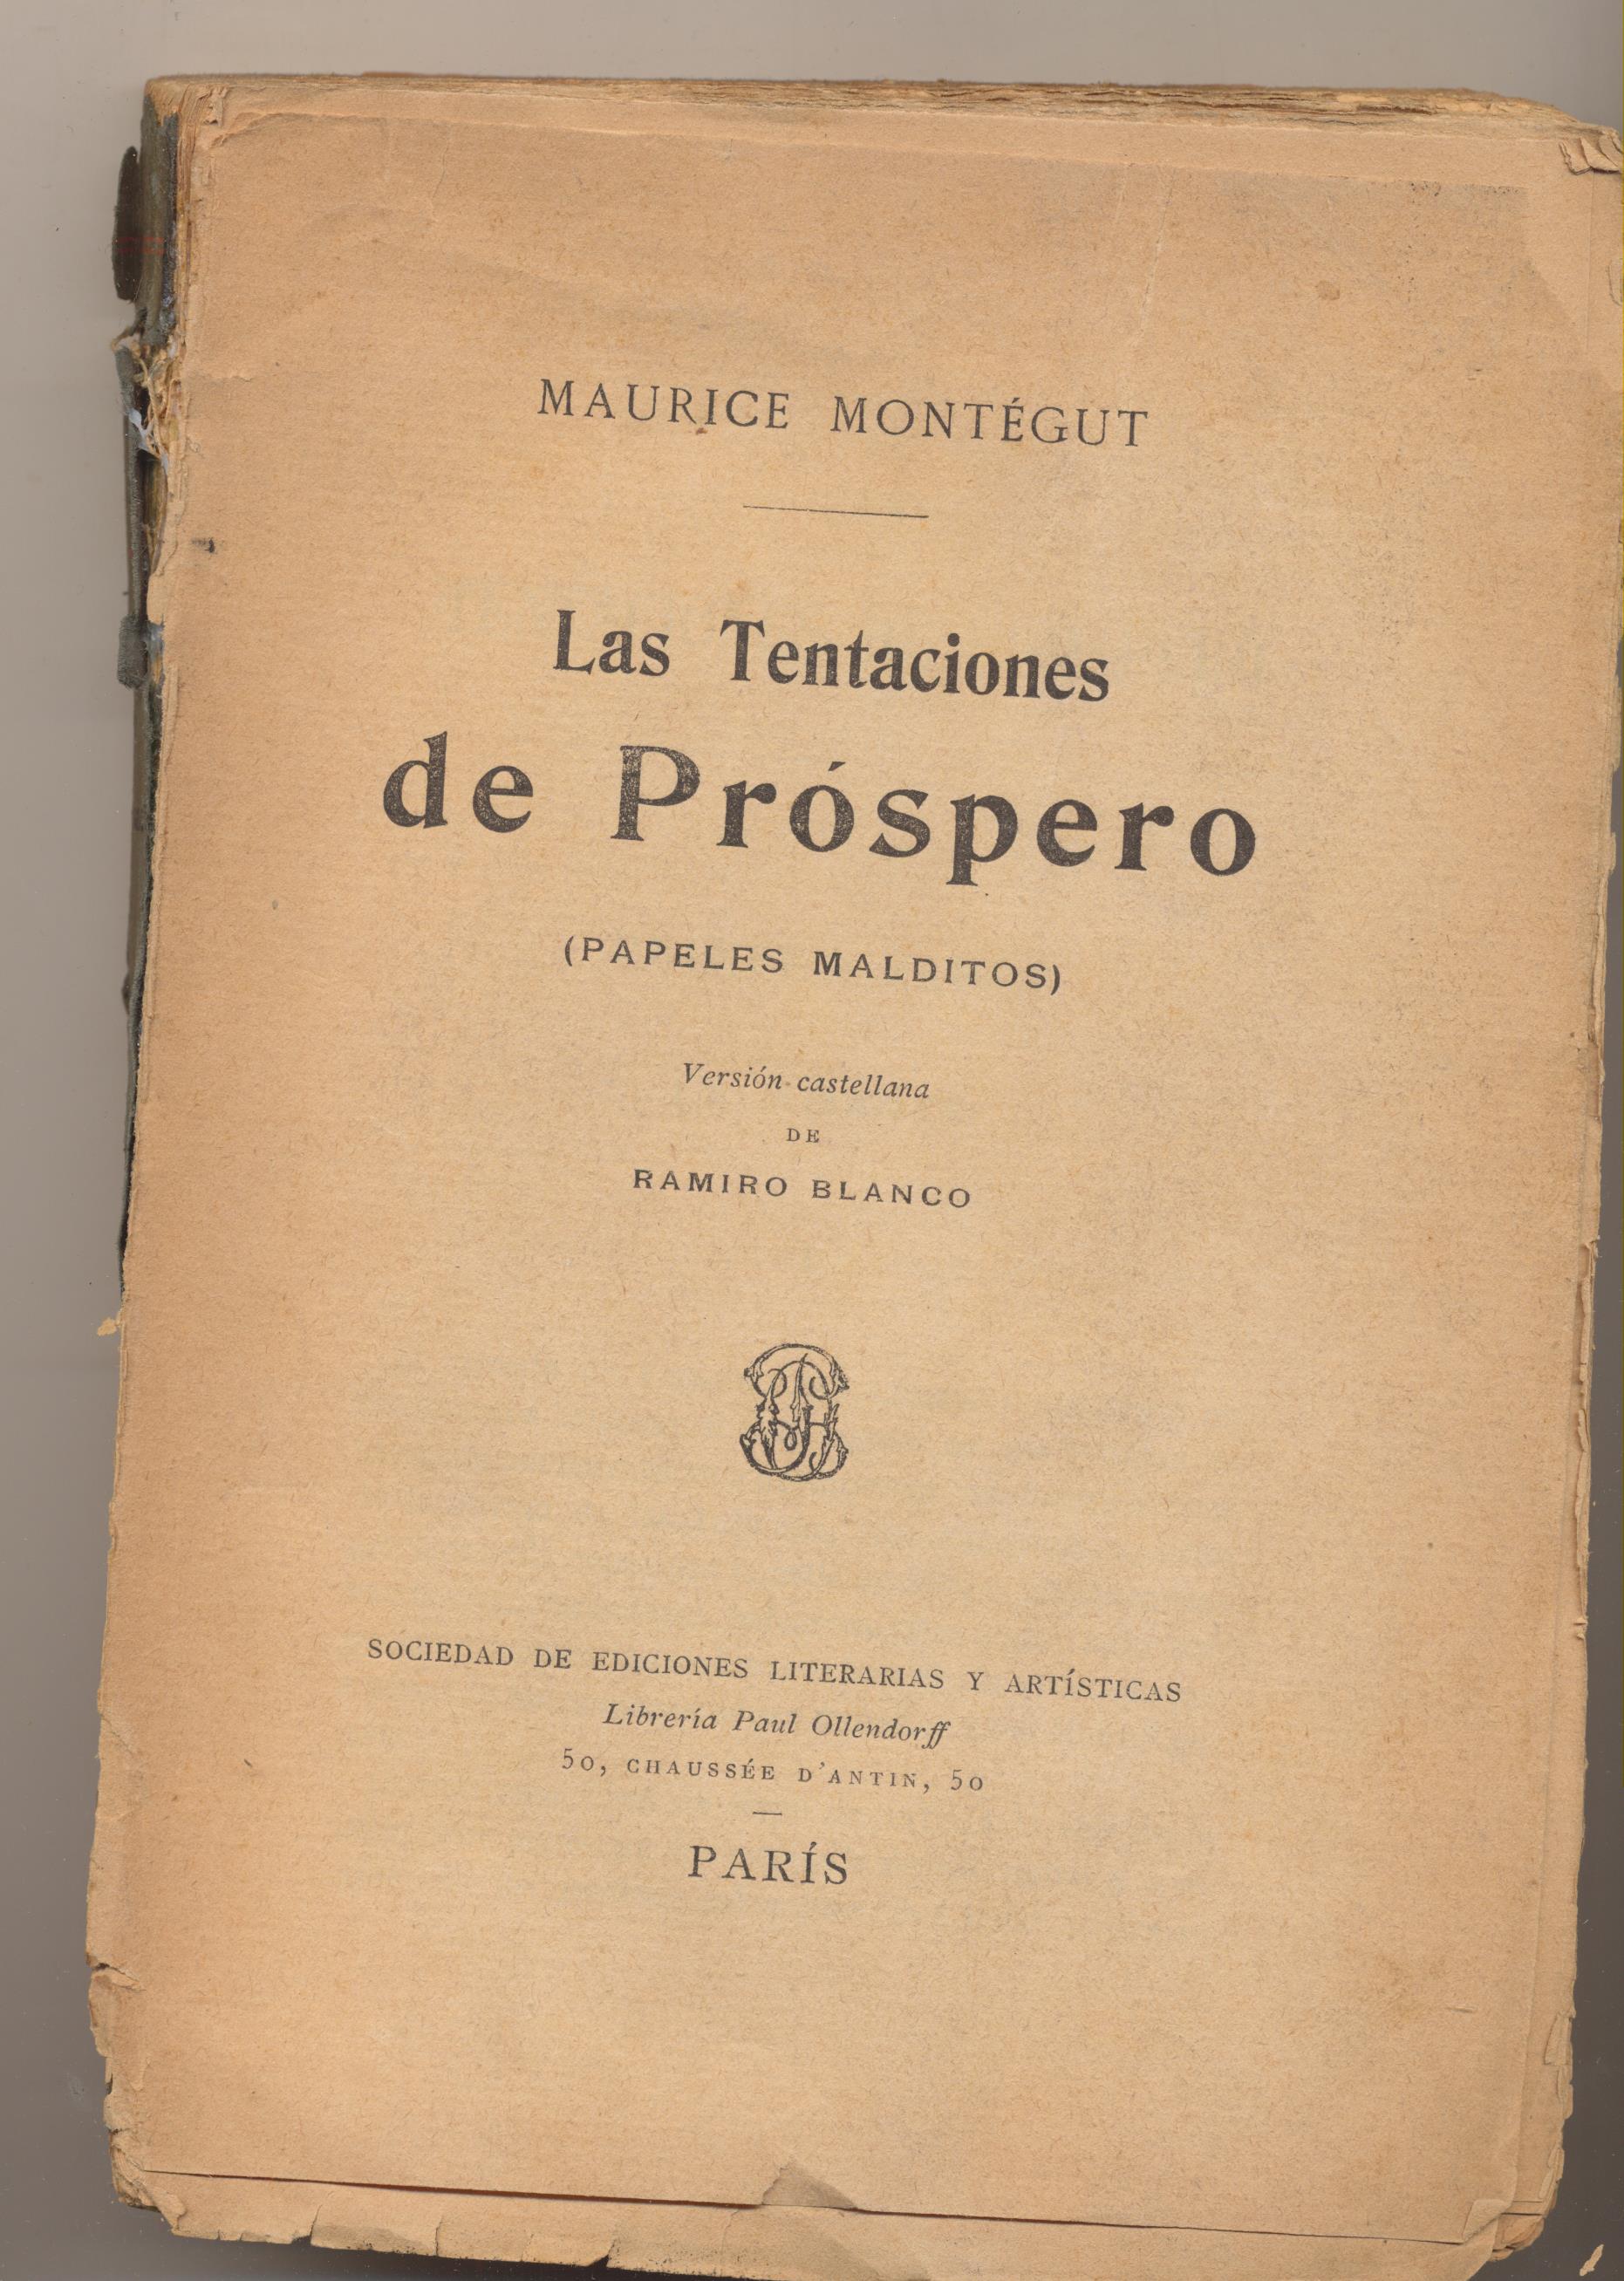 Maurice Montegut. Las Tentaciones de Prospero. Sociedad de Ediciones Literarias y Artísticas-Paris 1900?